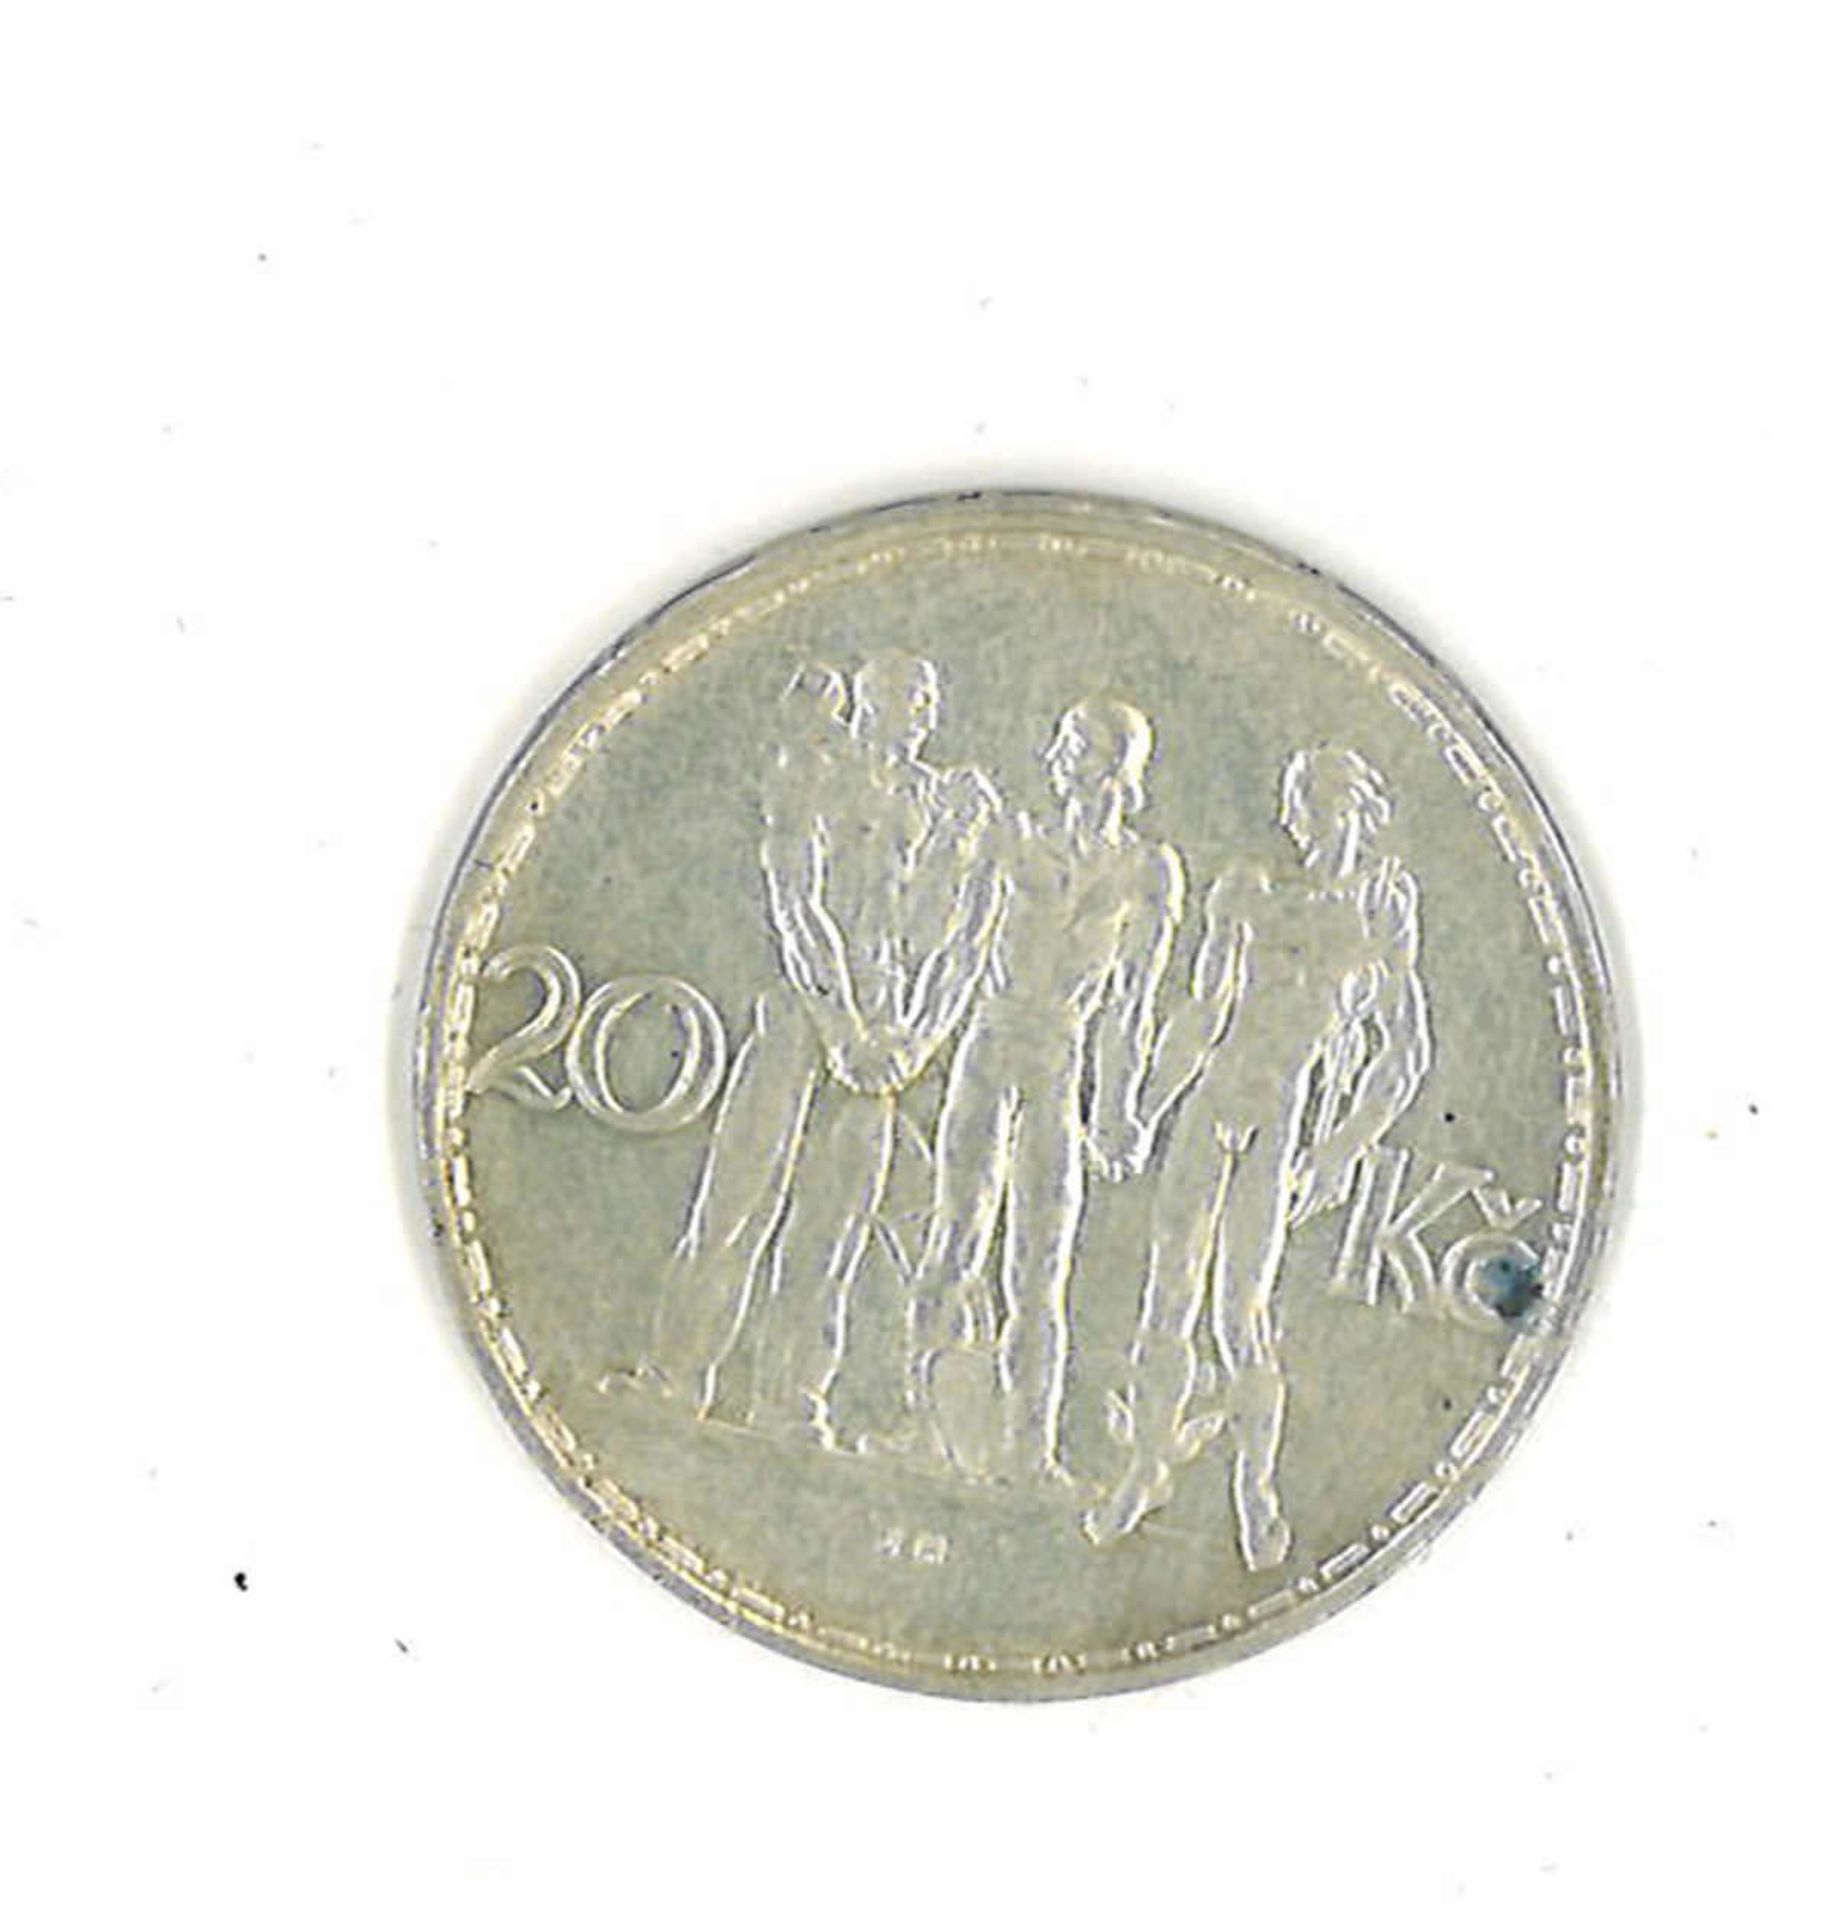 Tschechische Republik 1934, Silbermünze. 20 KronenCzech Republic 1934, silver coin. 20 crowns